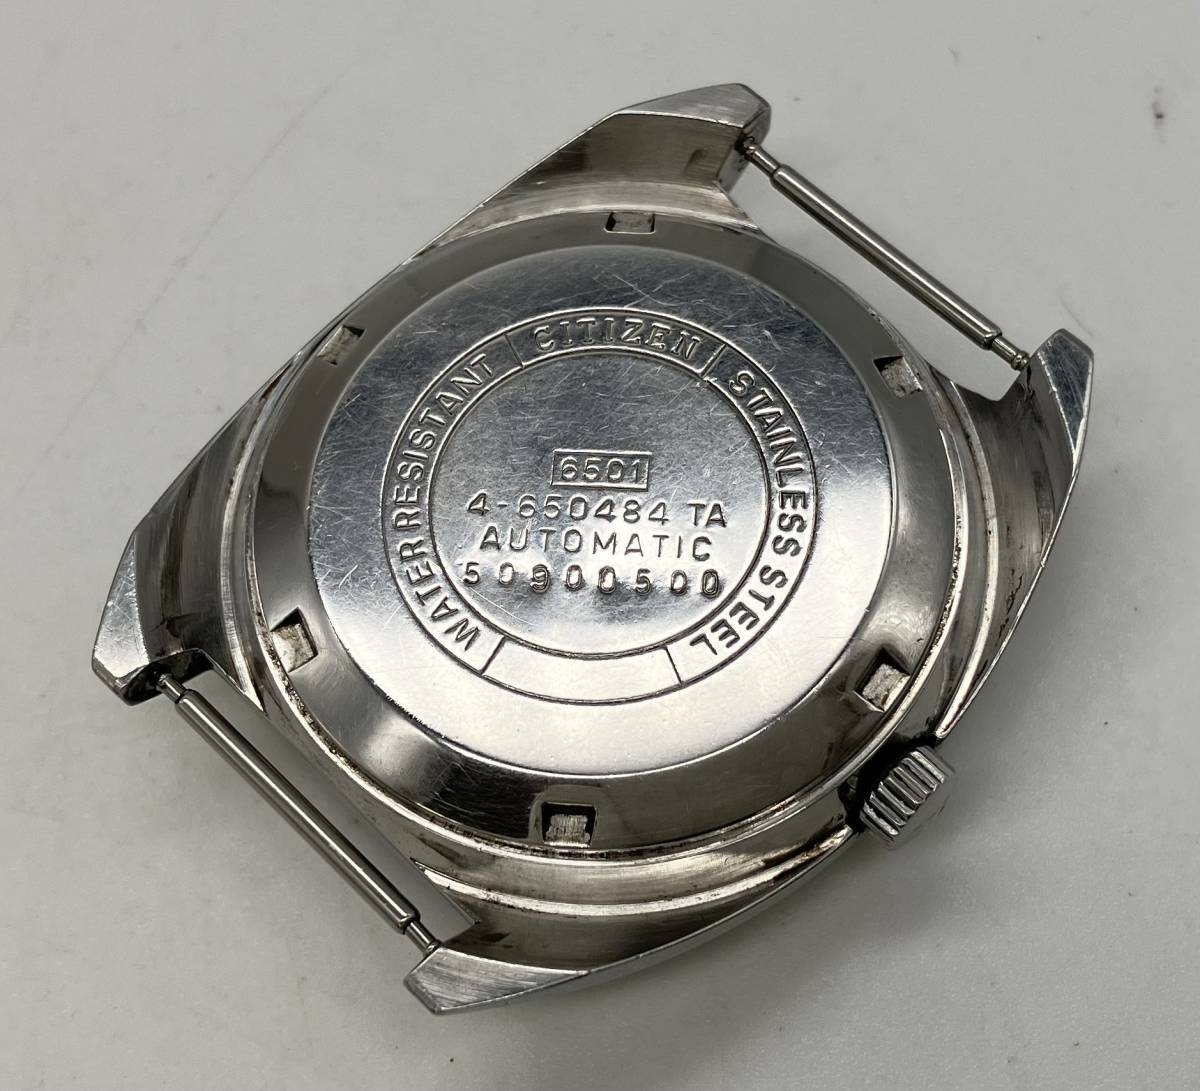 【ジャンク】 CITIZEN シチズン 自動巻き メンズ 腕時計 4-650484 自動巻き メンズ 腕時計 アンティーク ヴィンテージ_画像6